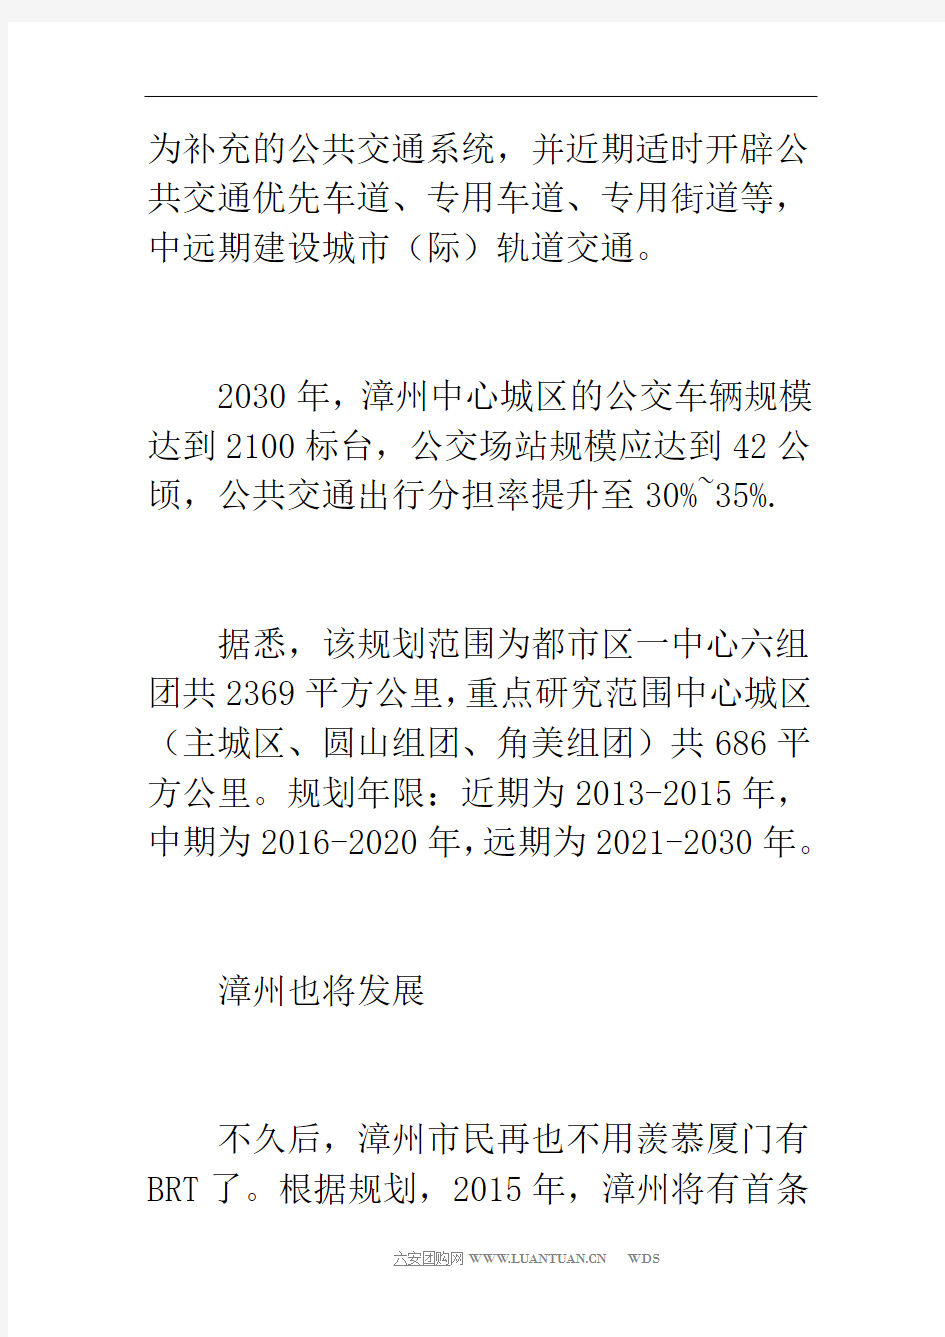 漳州拟规划至2030年建成5条brt公交线 2015年可乘brt(图)